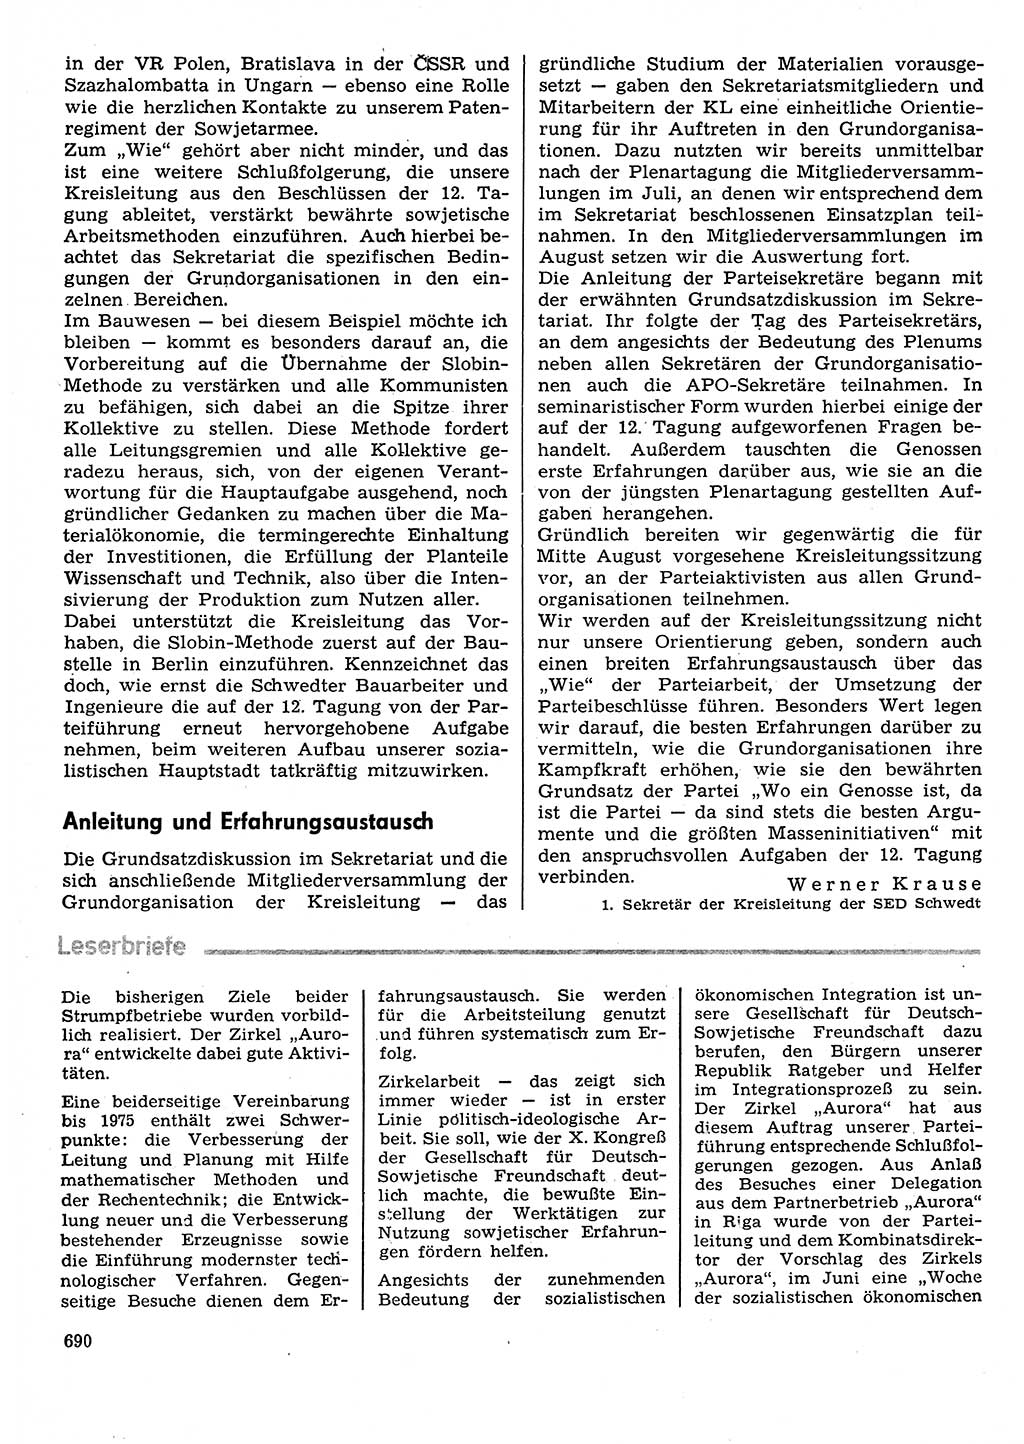 Neuer Weg (NW), Organ des Zentralkomitees (ZK) der SED (Sozialistische Einheitspartei Deutschlands) für Fragen des Parteilebens, 29. Jahrgang [Deutsche Demokratische Republik (DDR)] 1974, Seite 690 (NW ZK SED DDR 1974, S. 690)